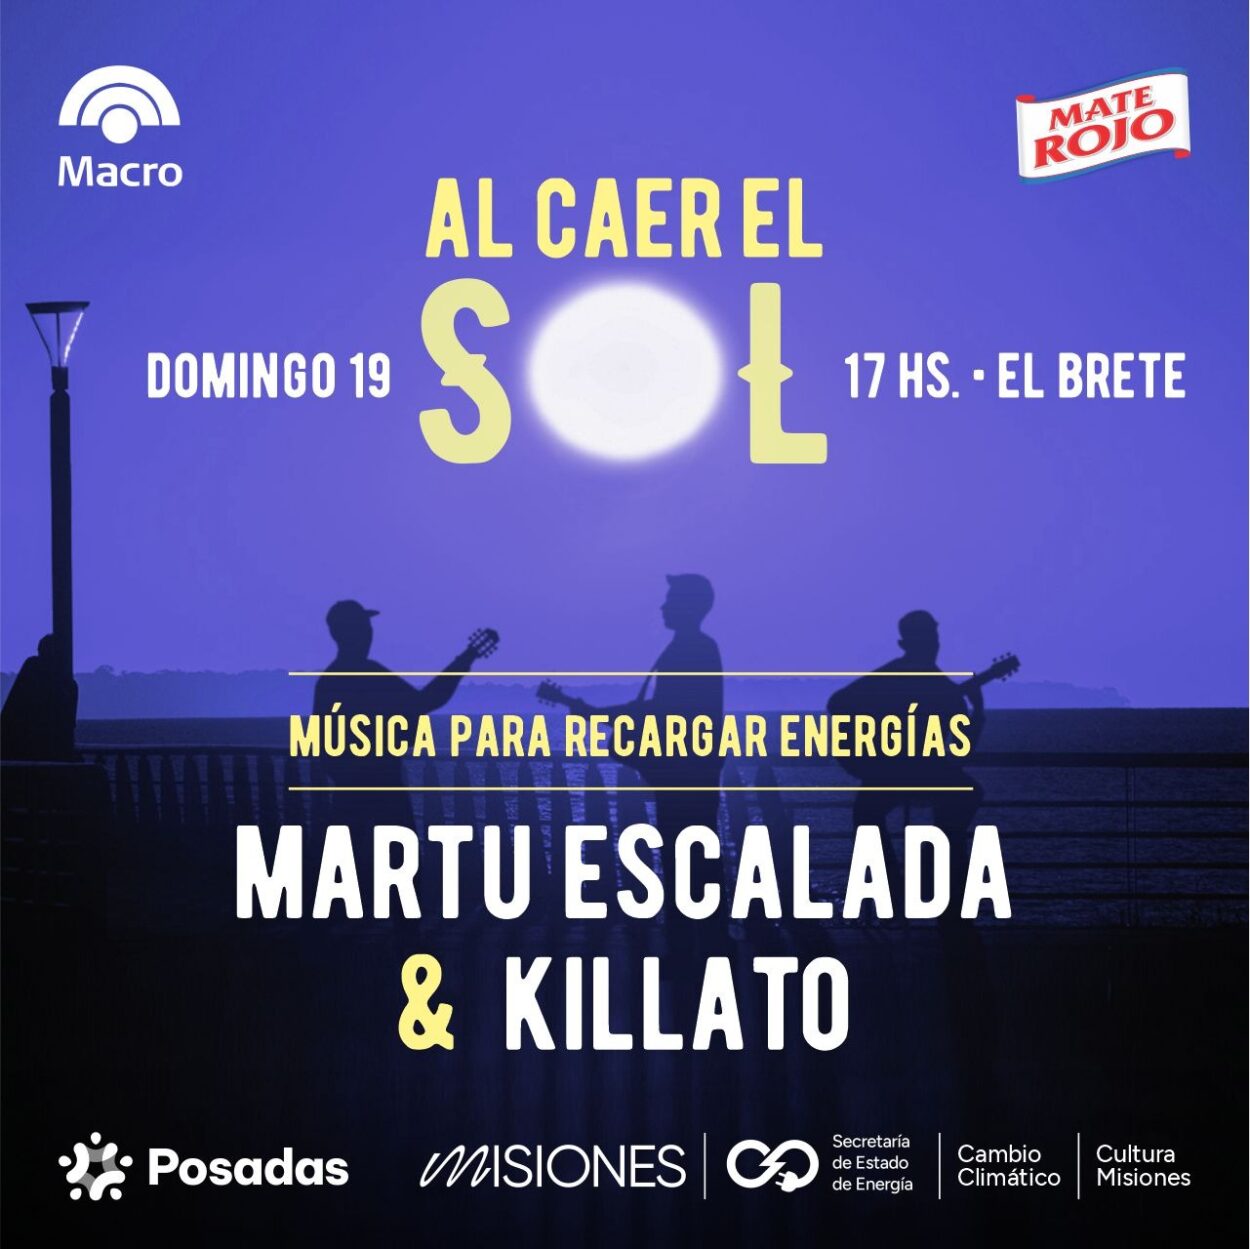 Martu Escalada y Killato: rock y música urbana este domingo “Al caer el sol en El Brete” imagen-6